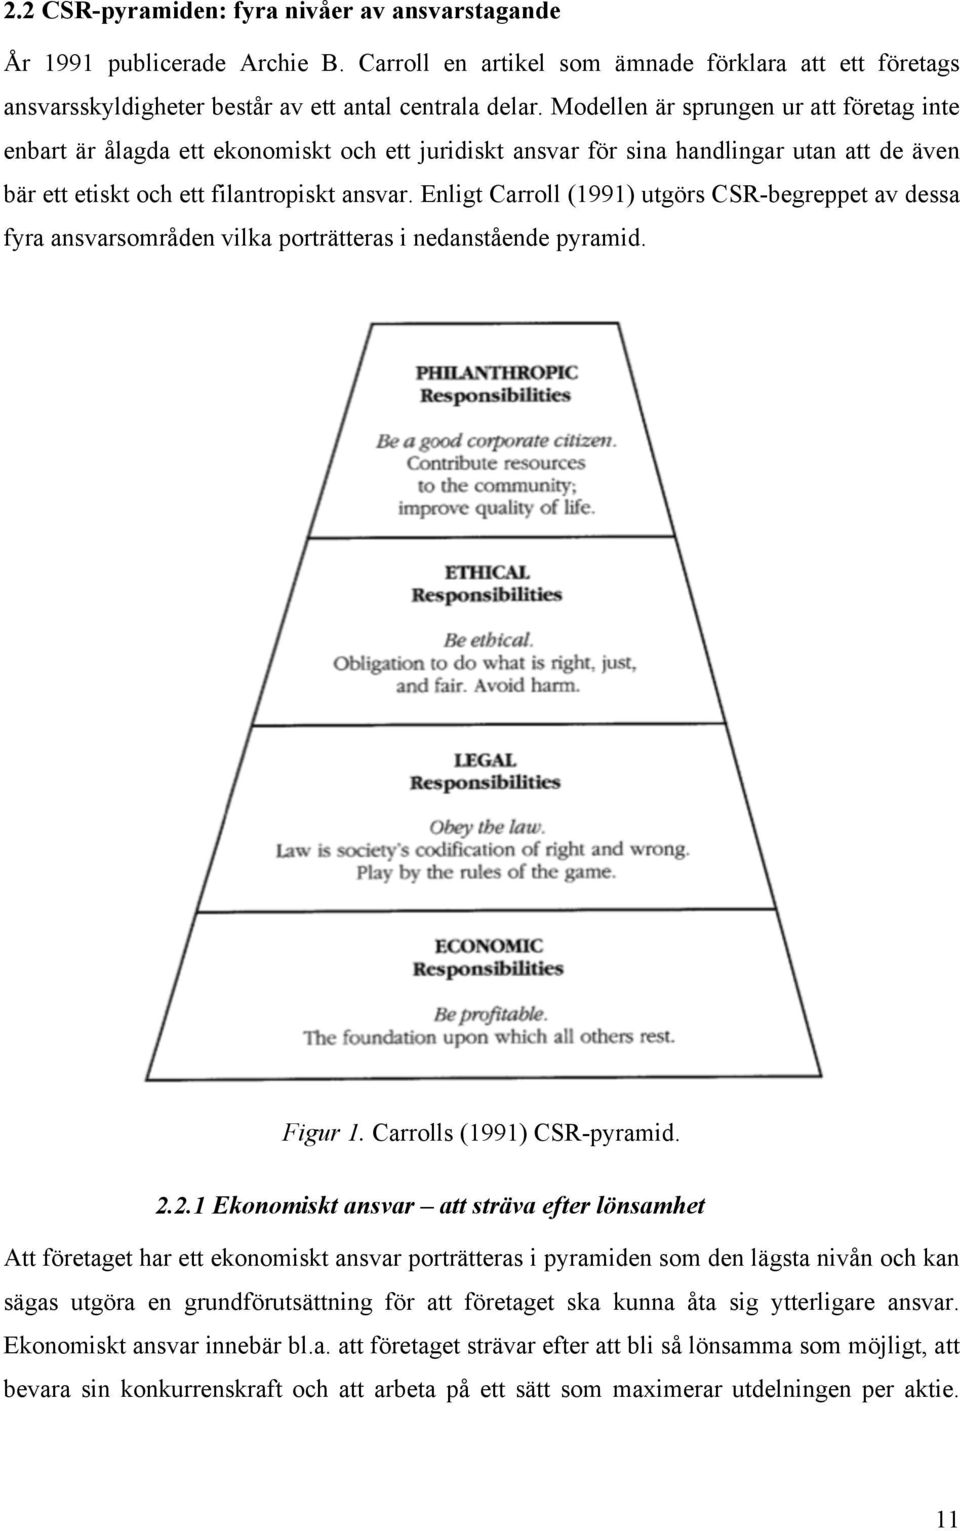 Enligt Carroll (1991) utgörs CSR-begreppet av dessa fyra ansvarsområden vilka porträtteras i nedanstående pyramid. Figur 1. Carrolls (1991) CSR-pyramid. 2.